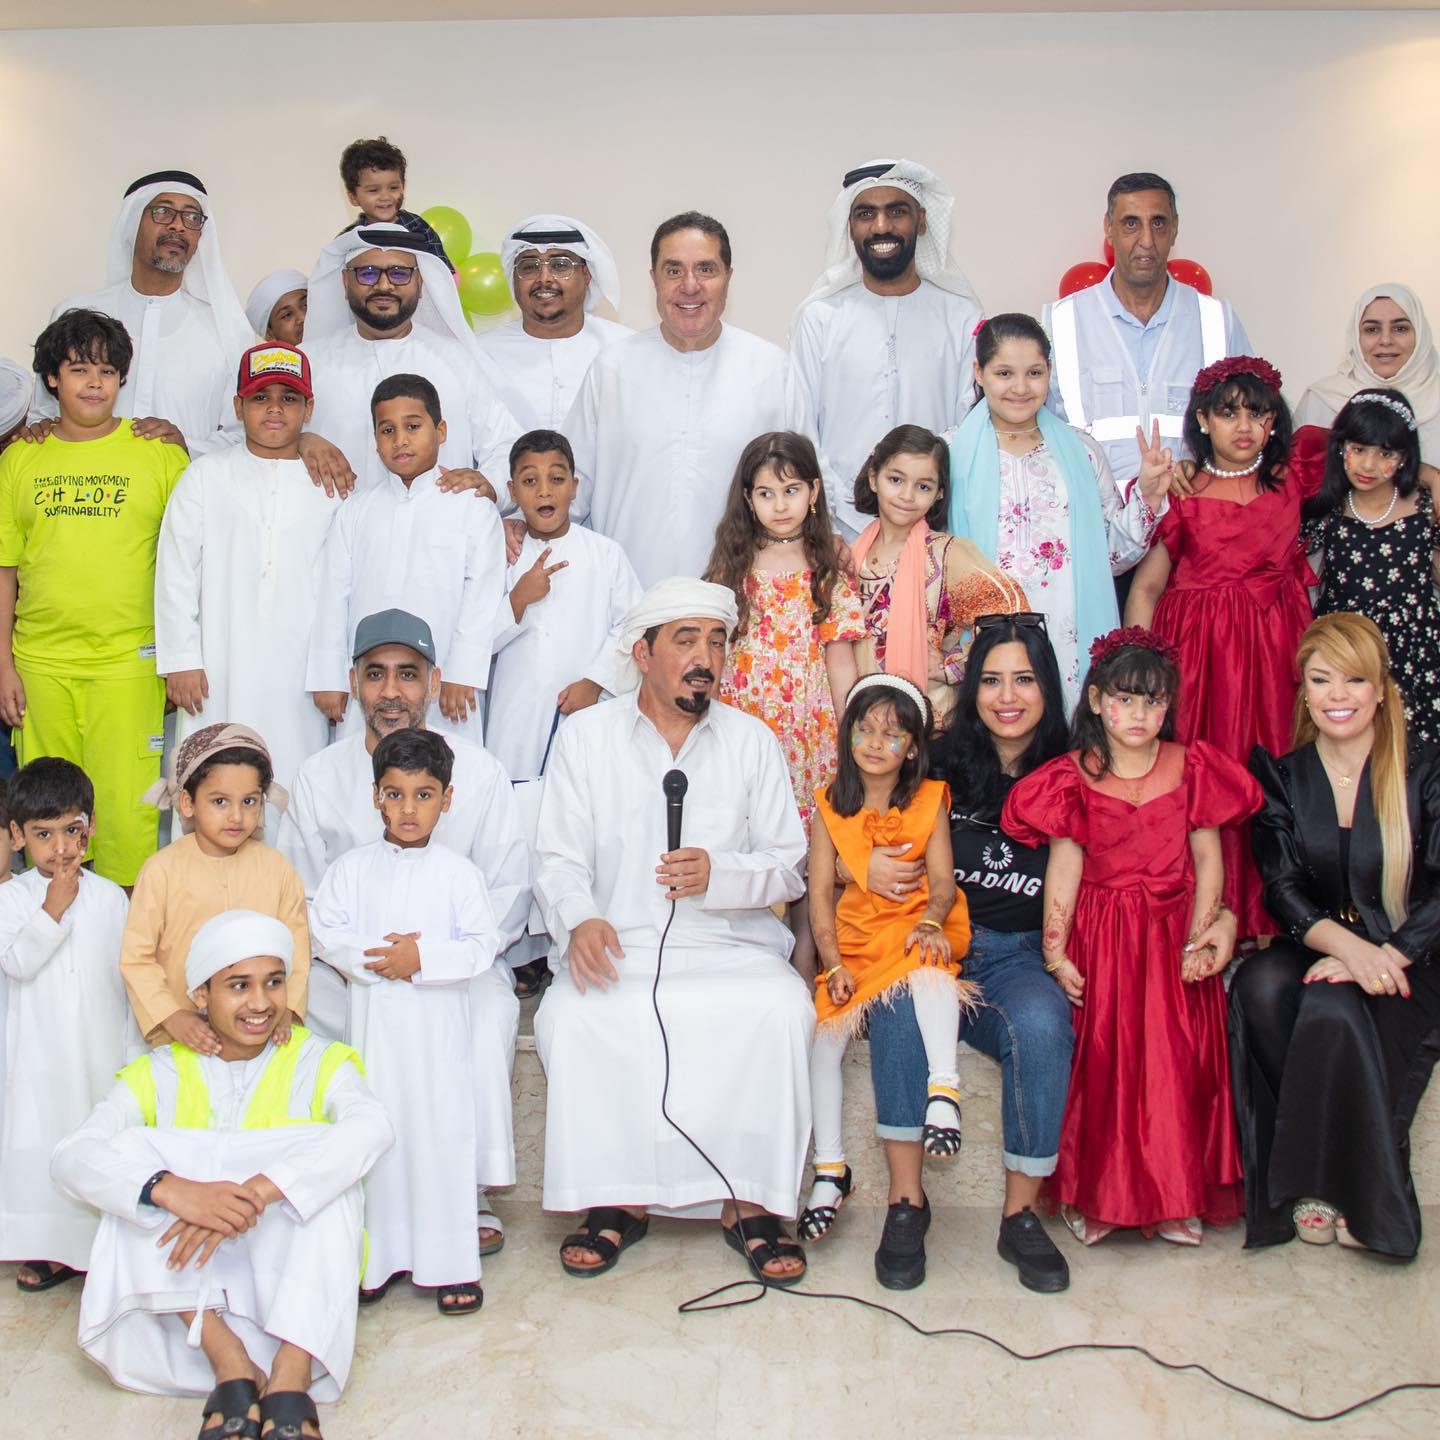 بالصور المهندس فتحى عفانة يشارك فى الإحتفال بعيد الأضحى المبارك مع الأطفال الأيتام